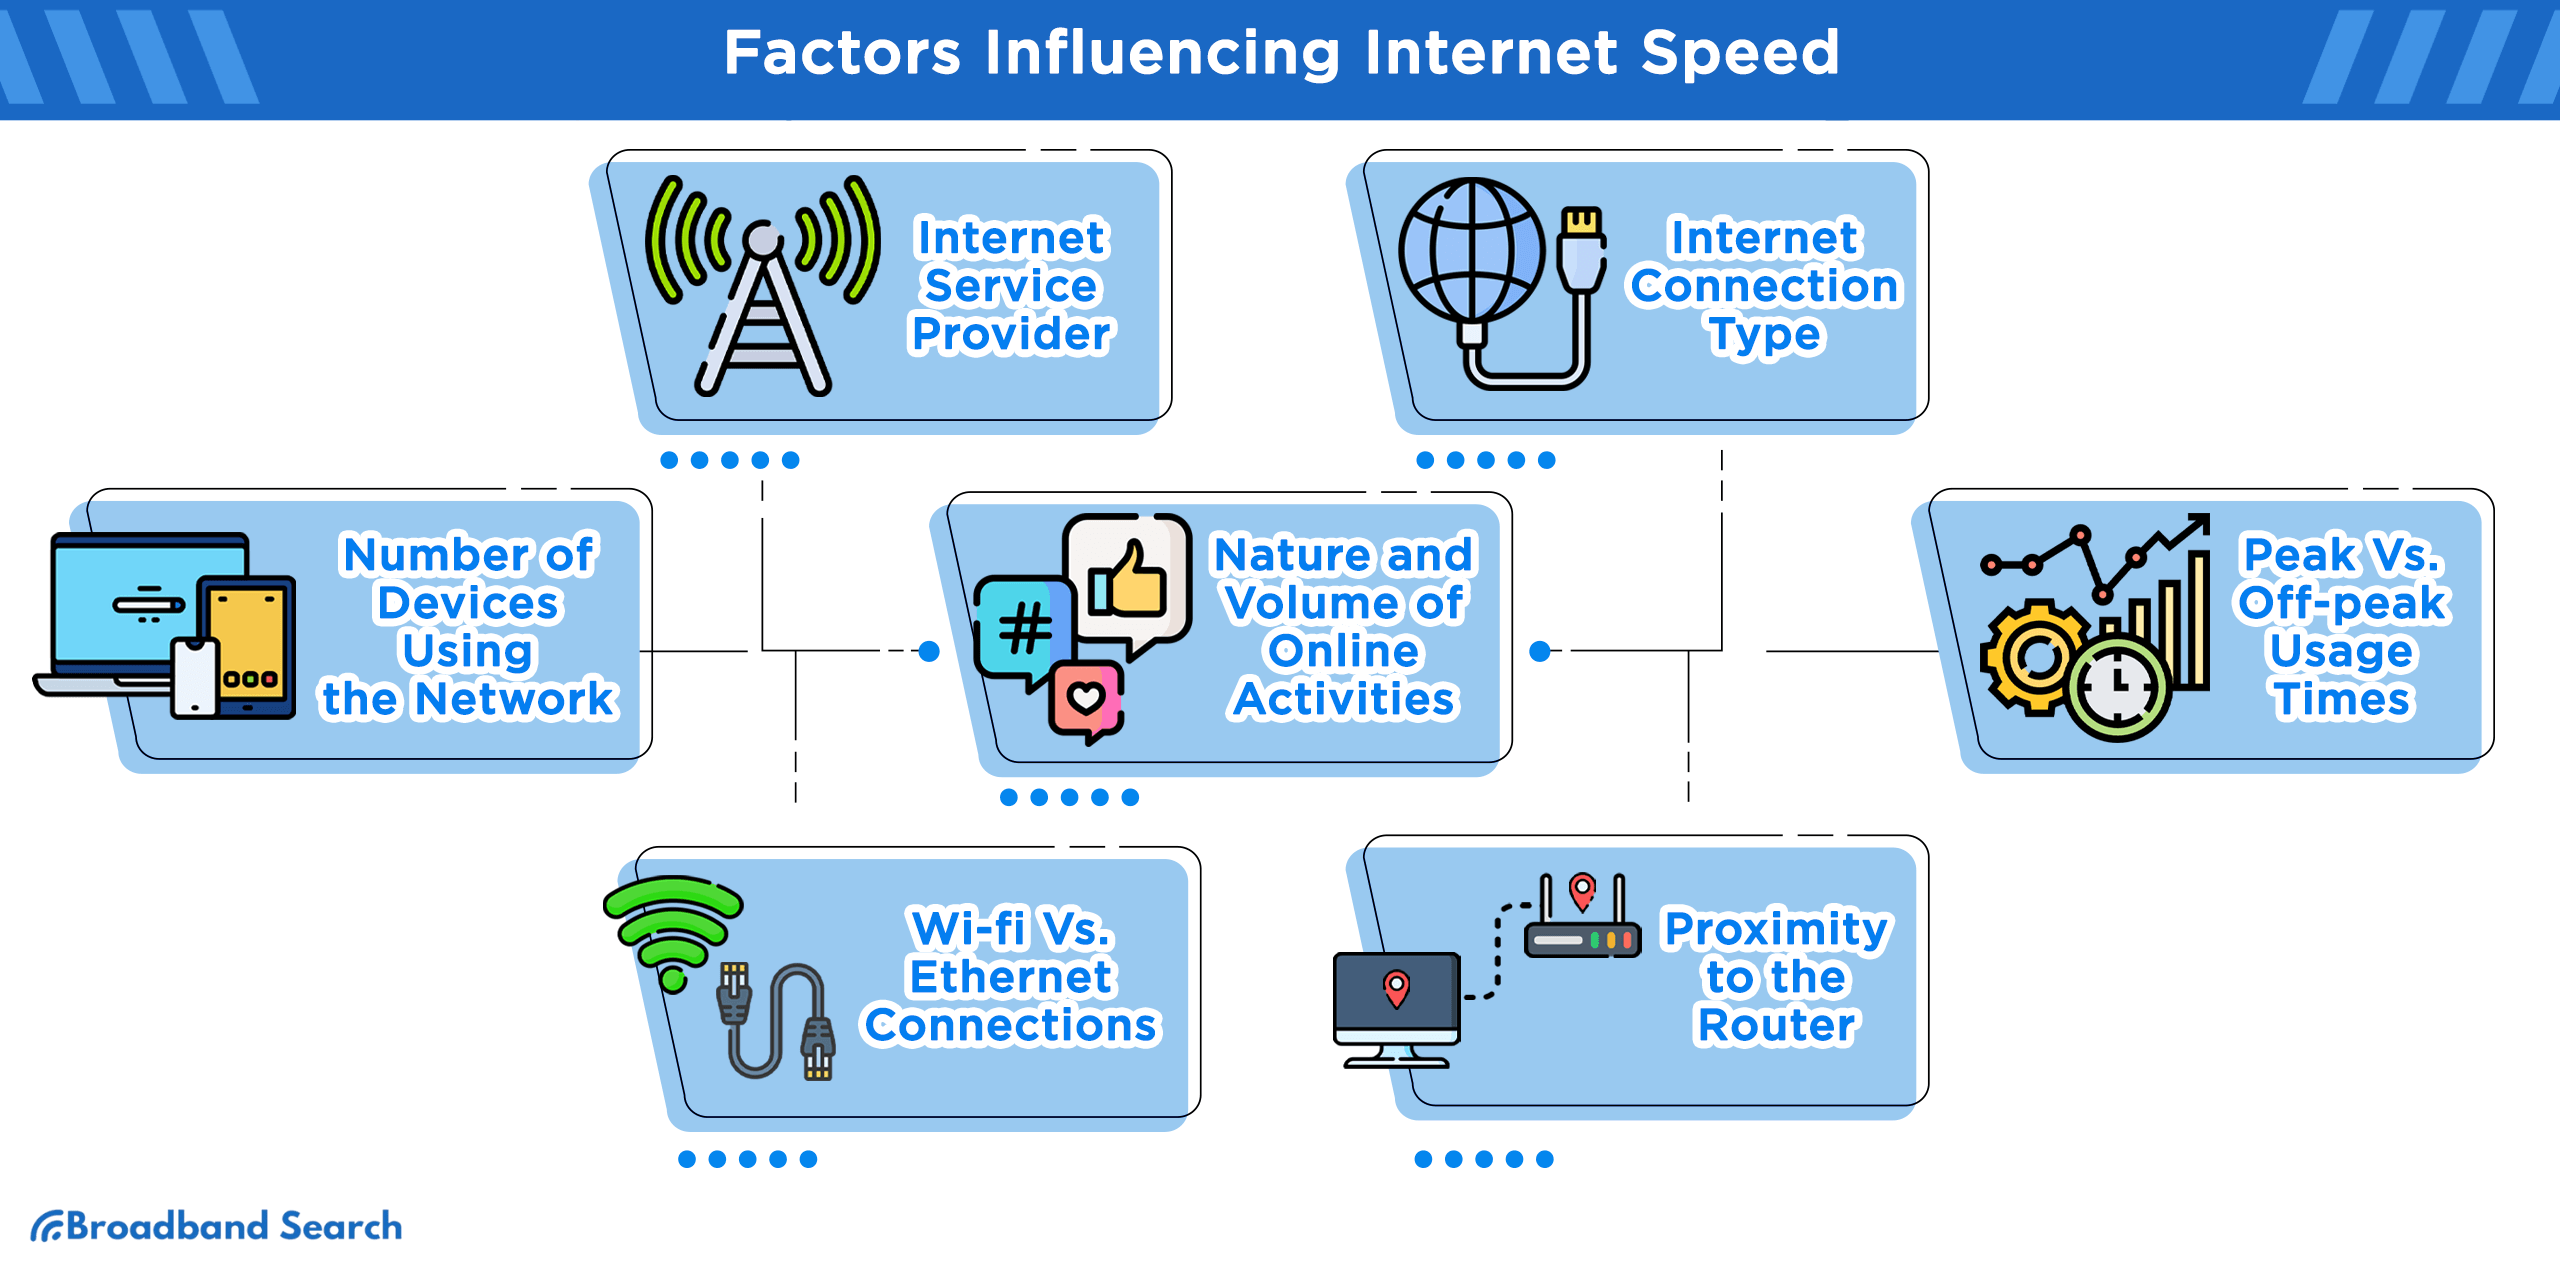 Factors influencing Internet Speed